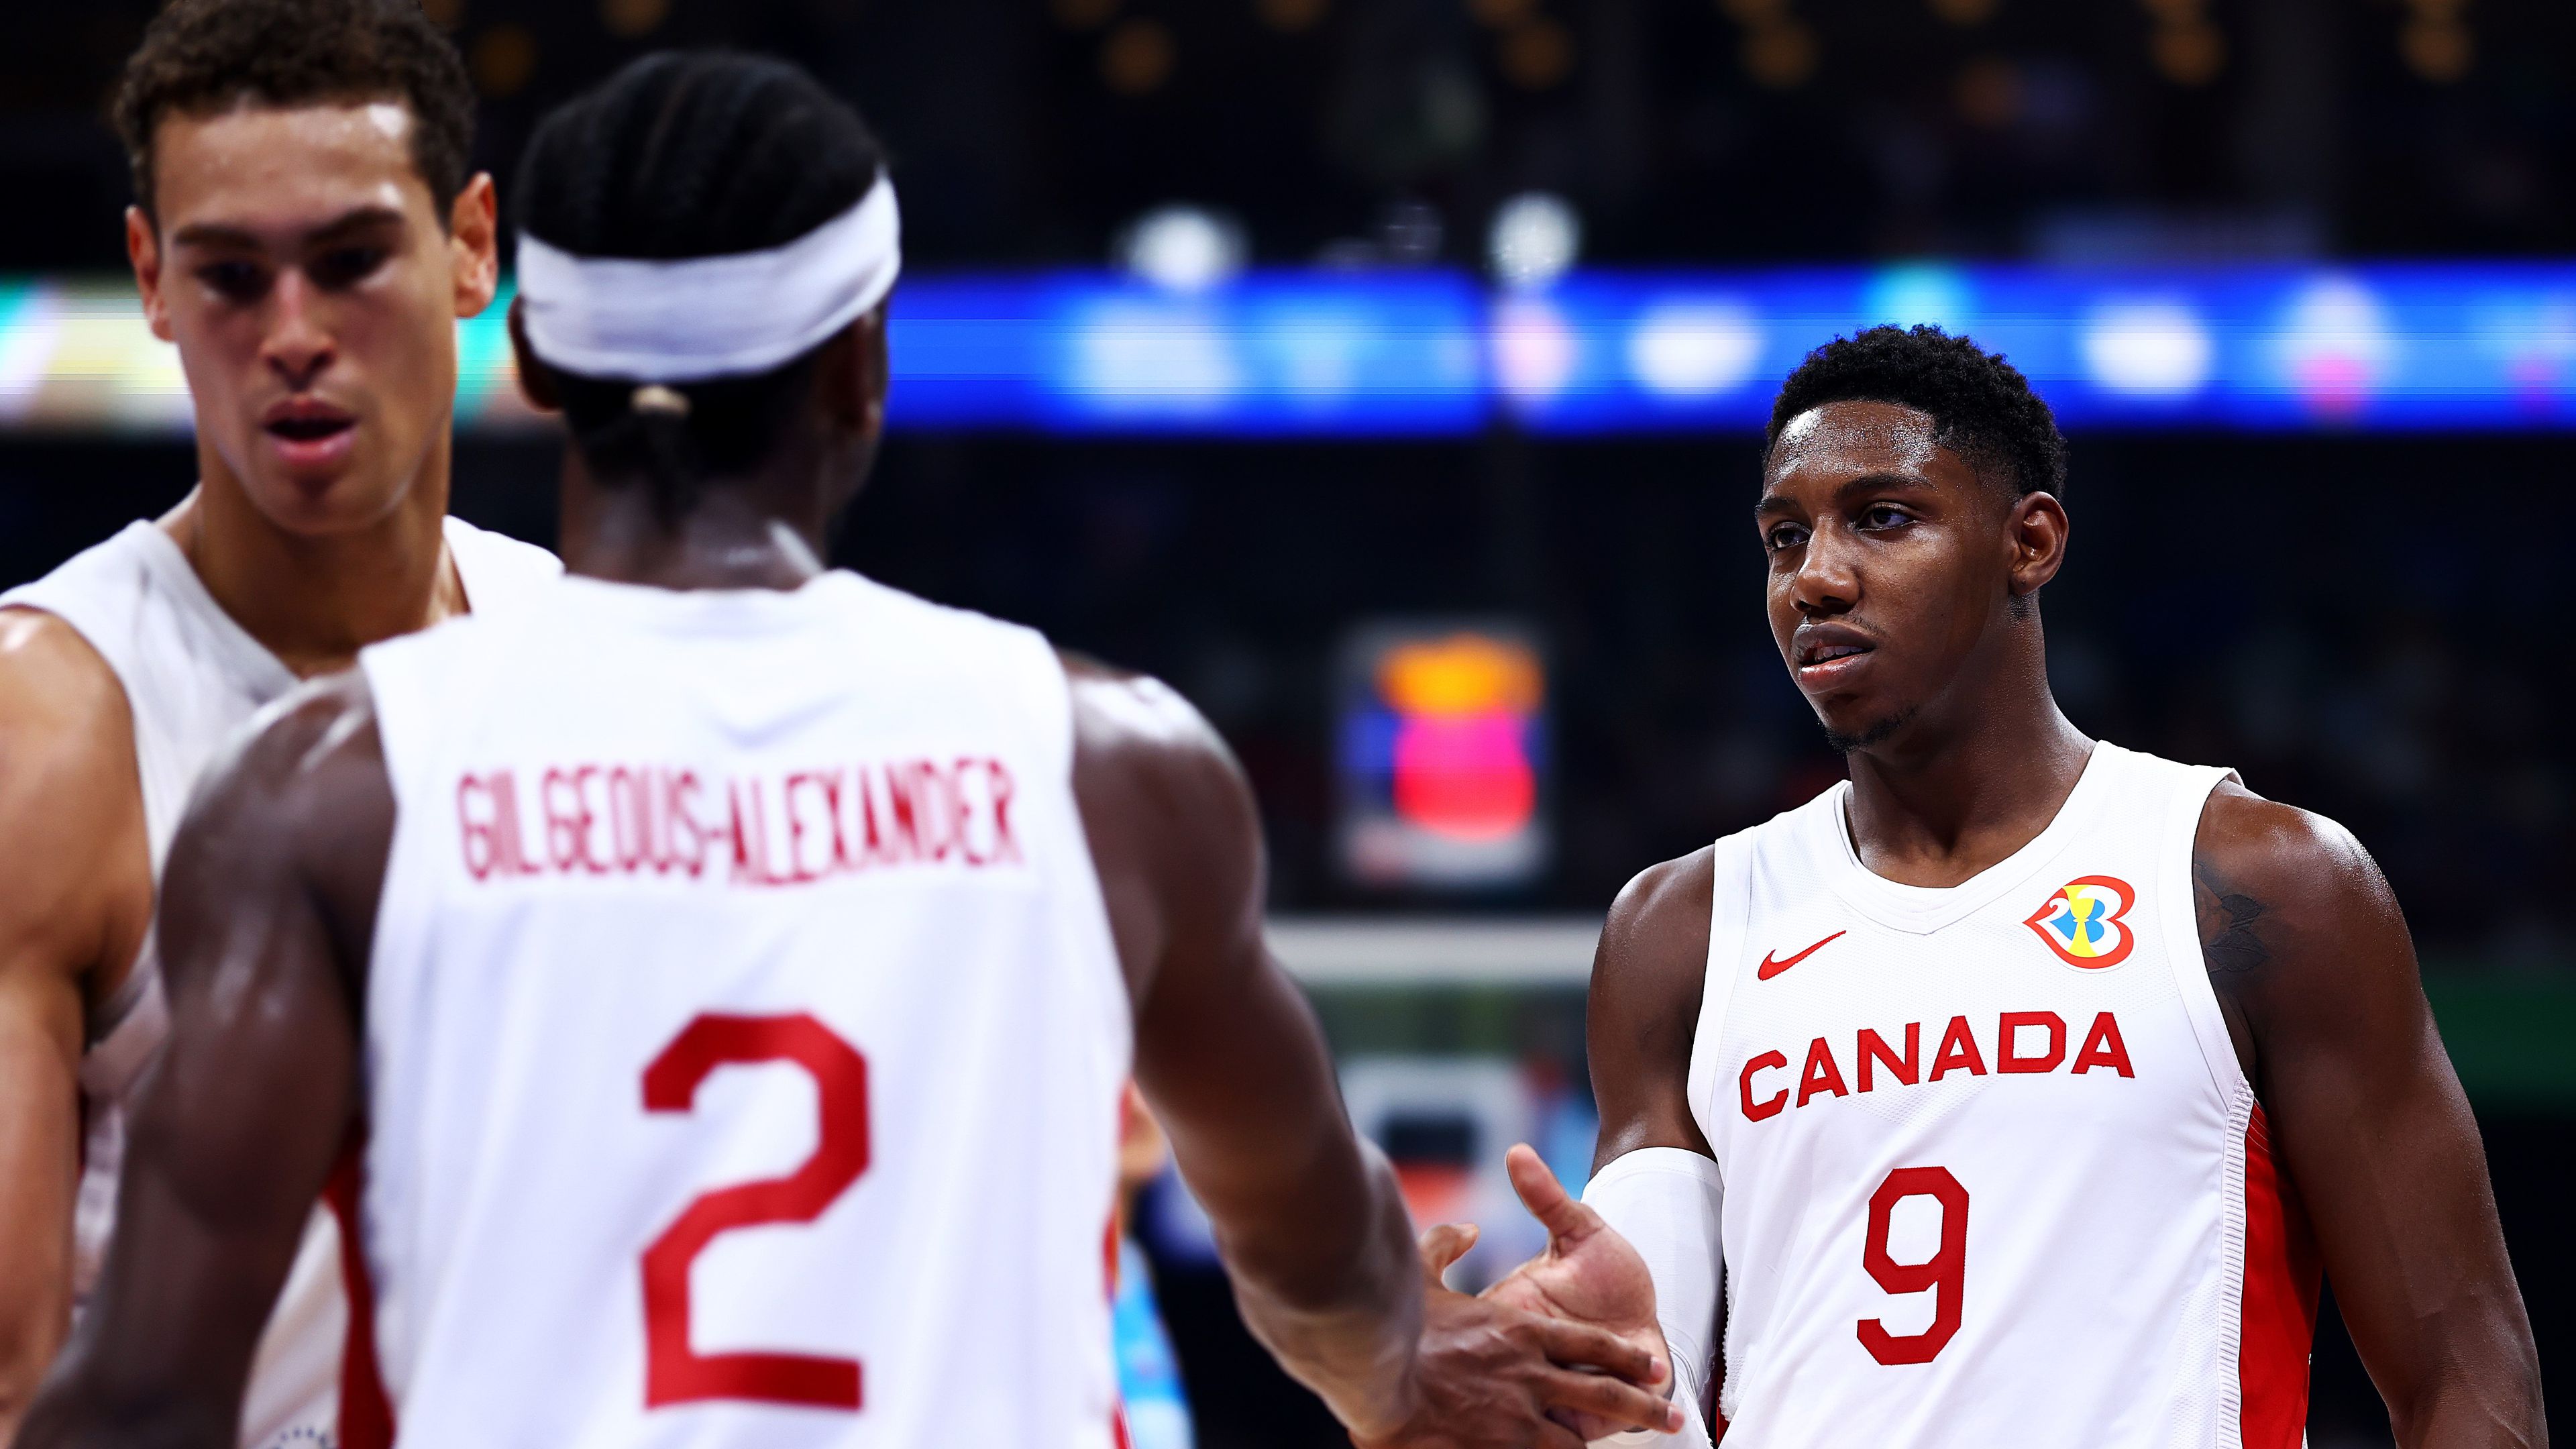 Kanada továbbjutott a kosár-vb-n, jöhet a történelmi elődöntő!